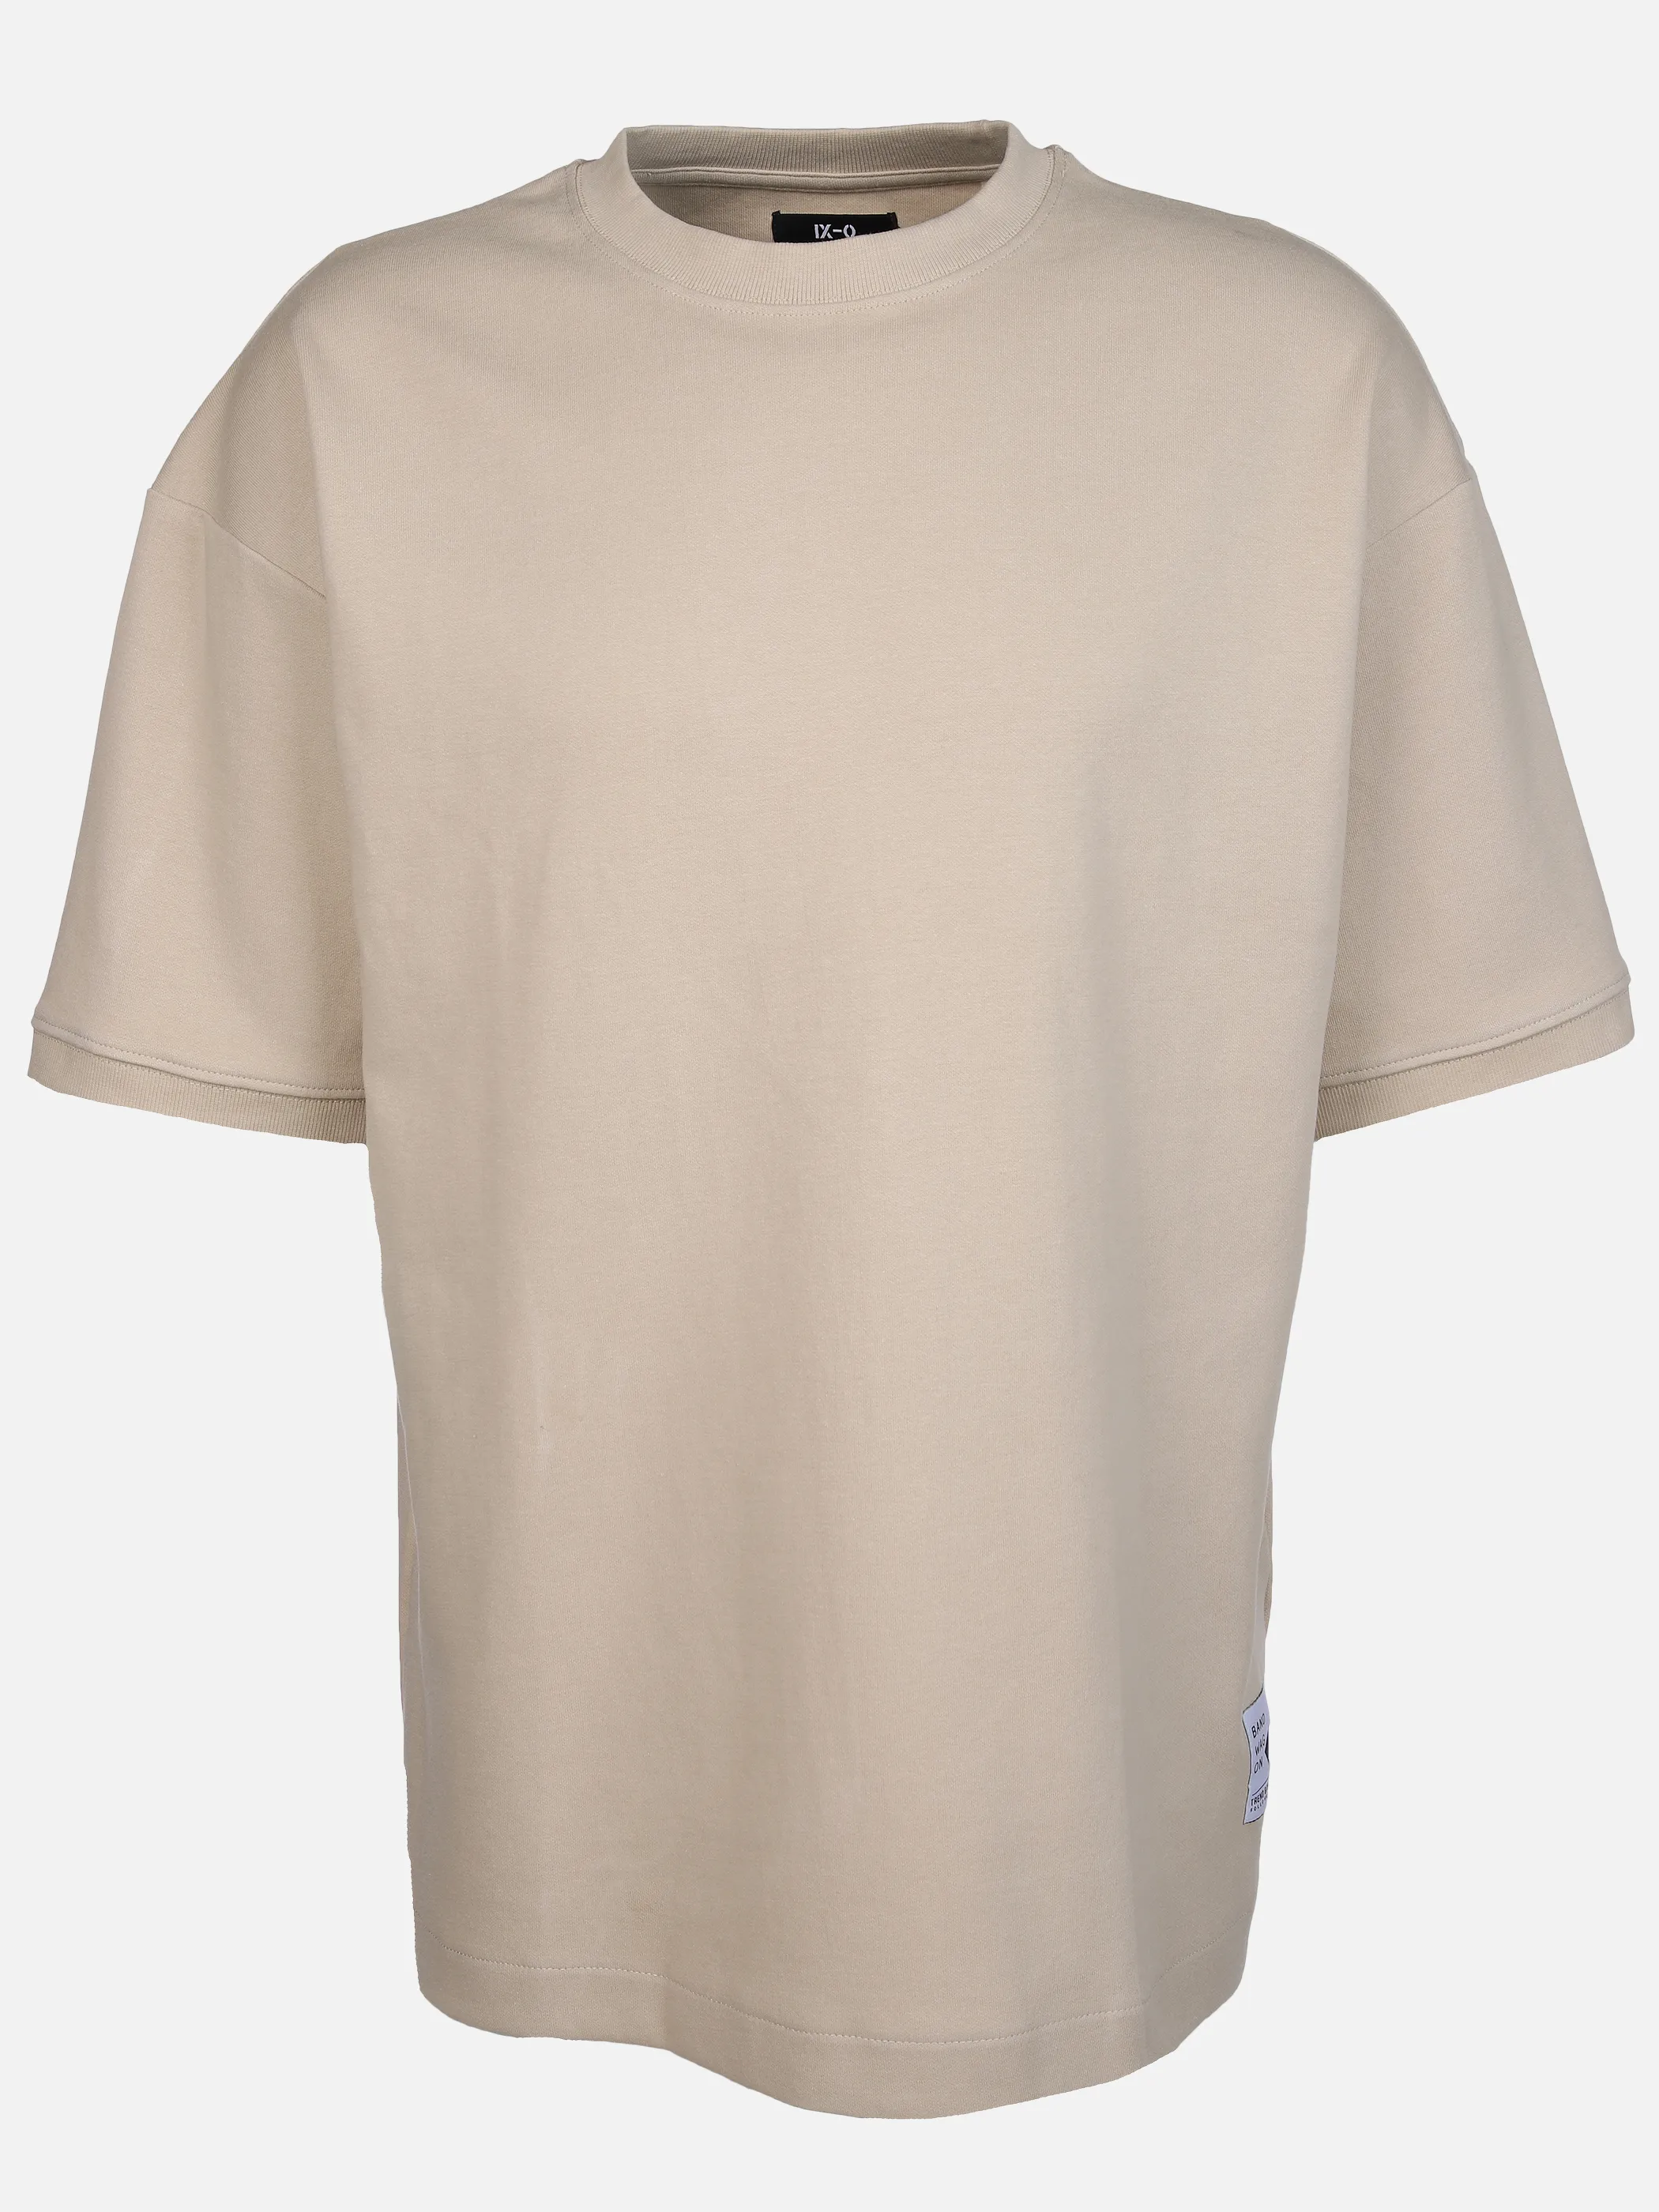 IX-O YF-He- T-Shirt Oversized Beige 891812 BEIGE 1